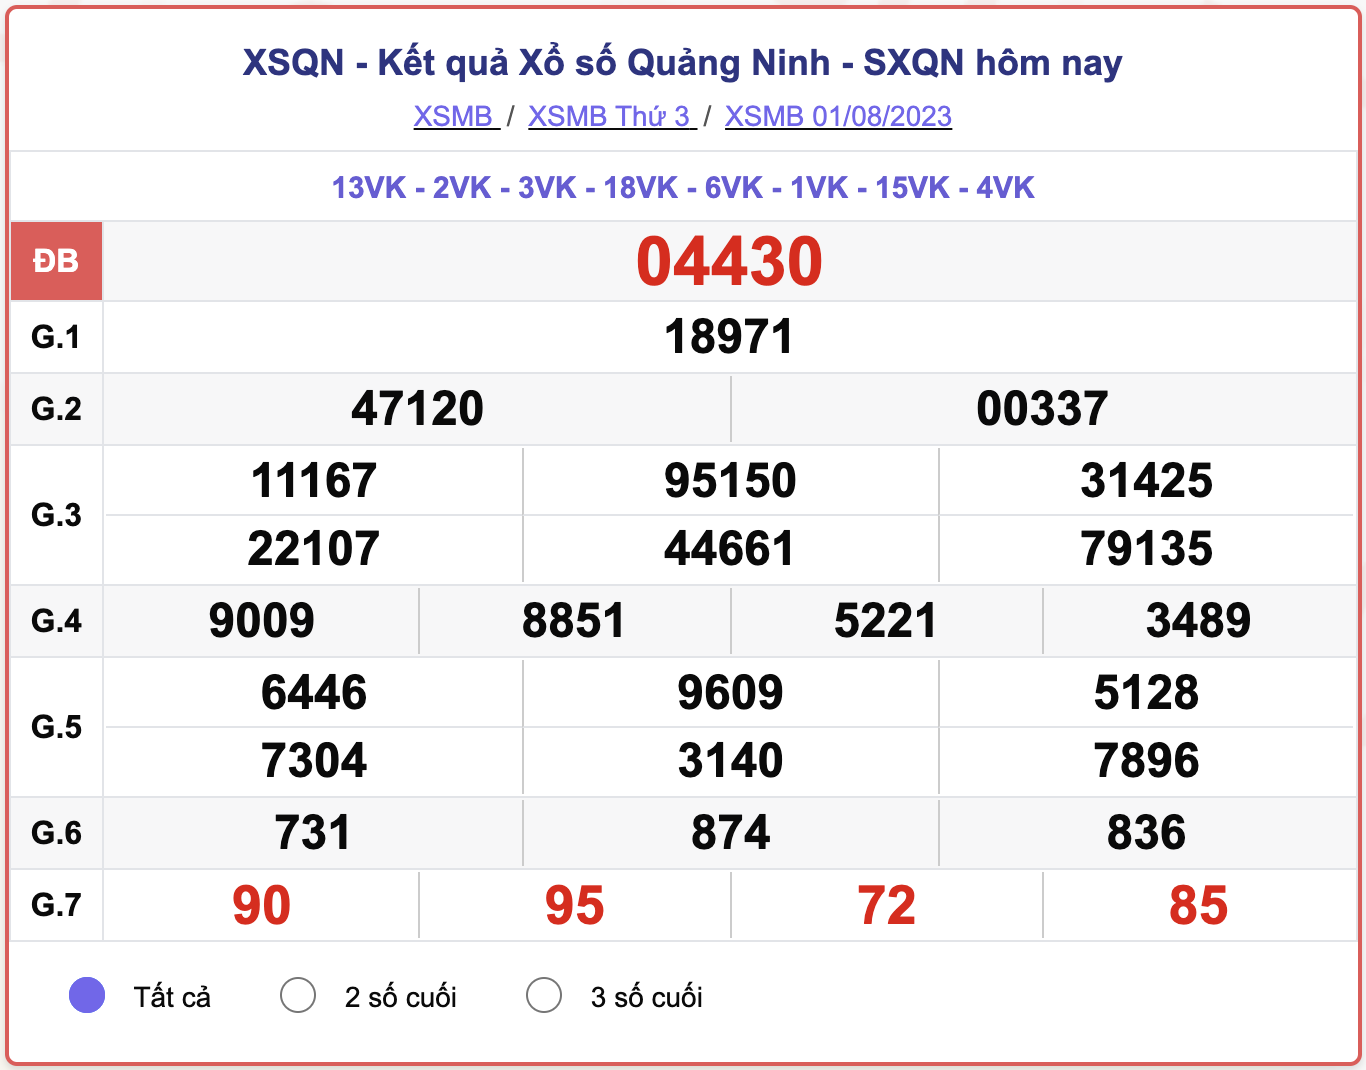 XSMB thứ 3, kết quả xổ số Quảng Ninh ngày 1/8/2023